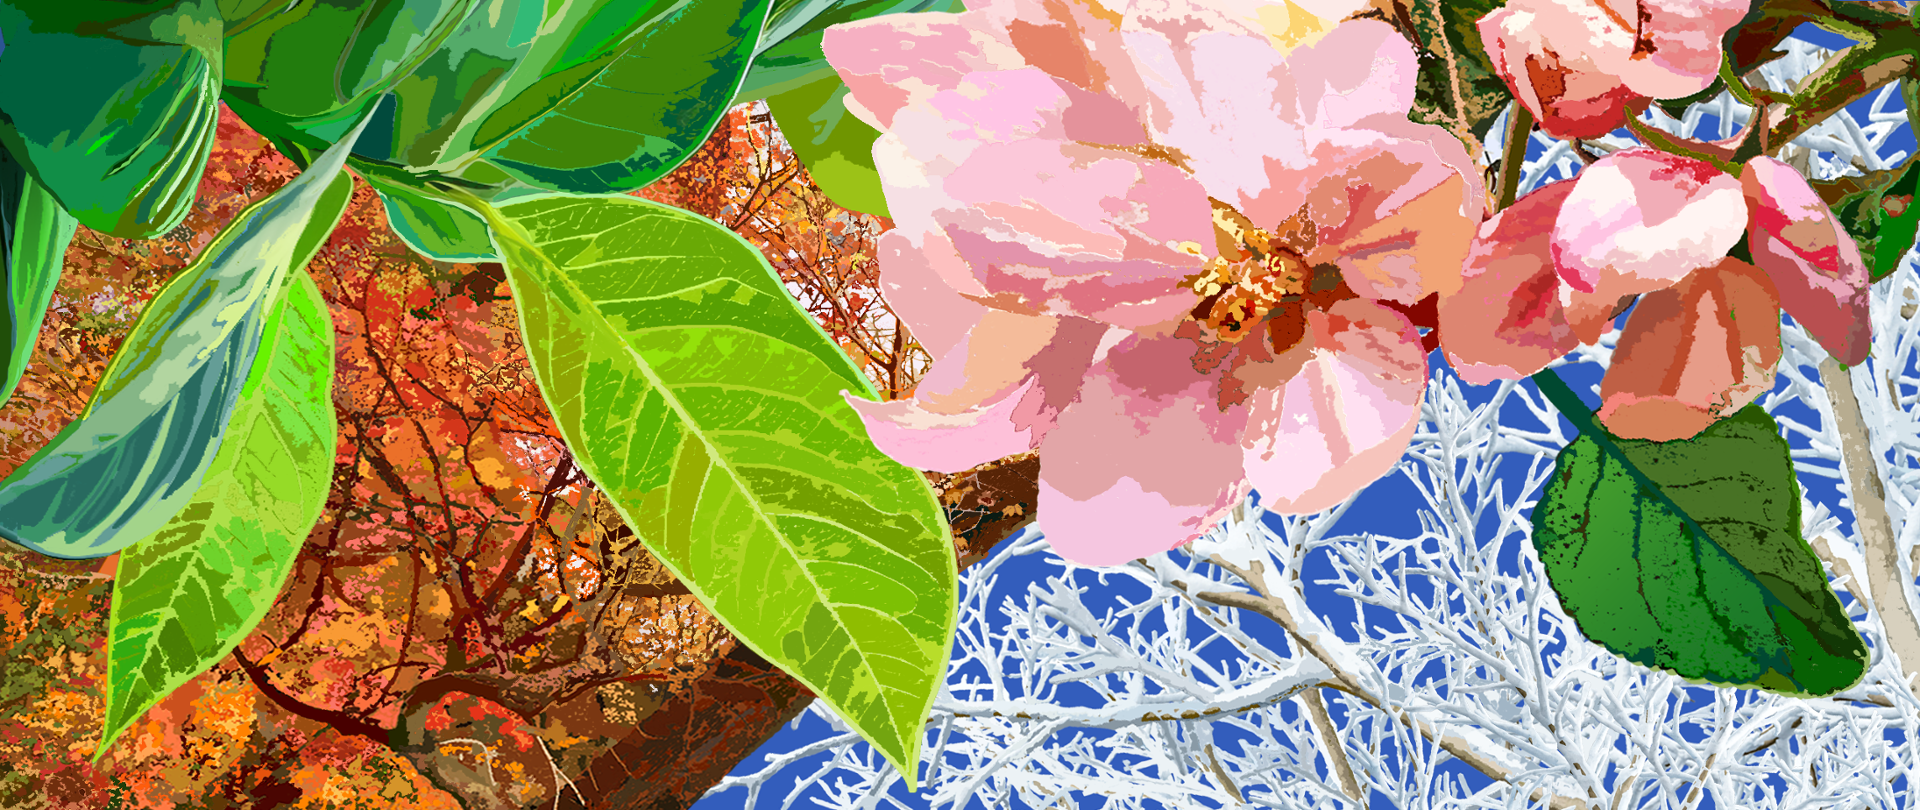 kolaż złożony z zielonego liścia, różowego kwiatu, oszronionych gałęzi i jesiennych liści na drzewie